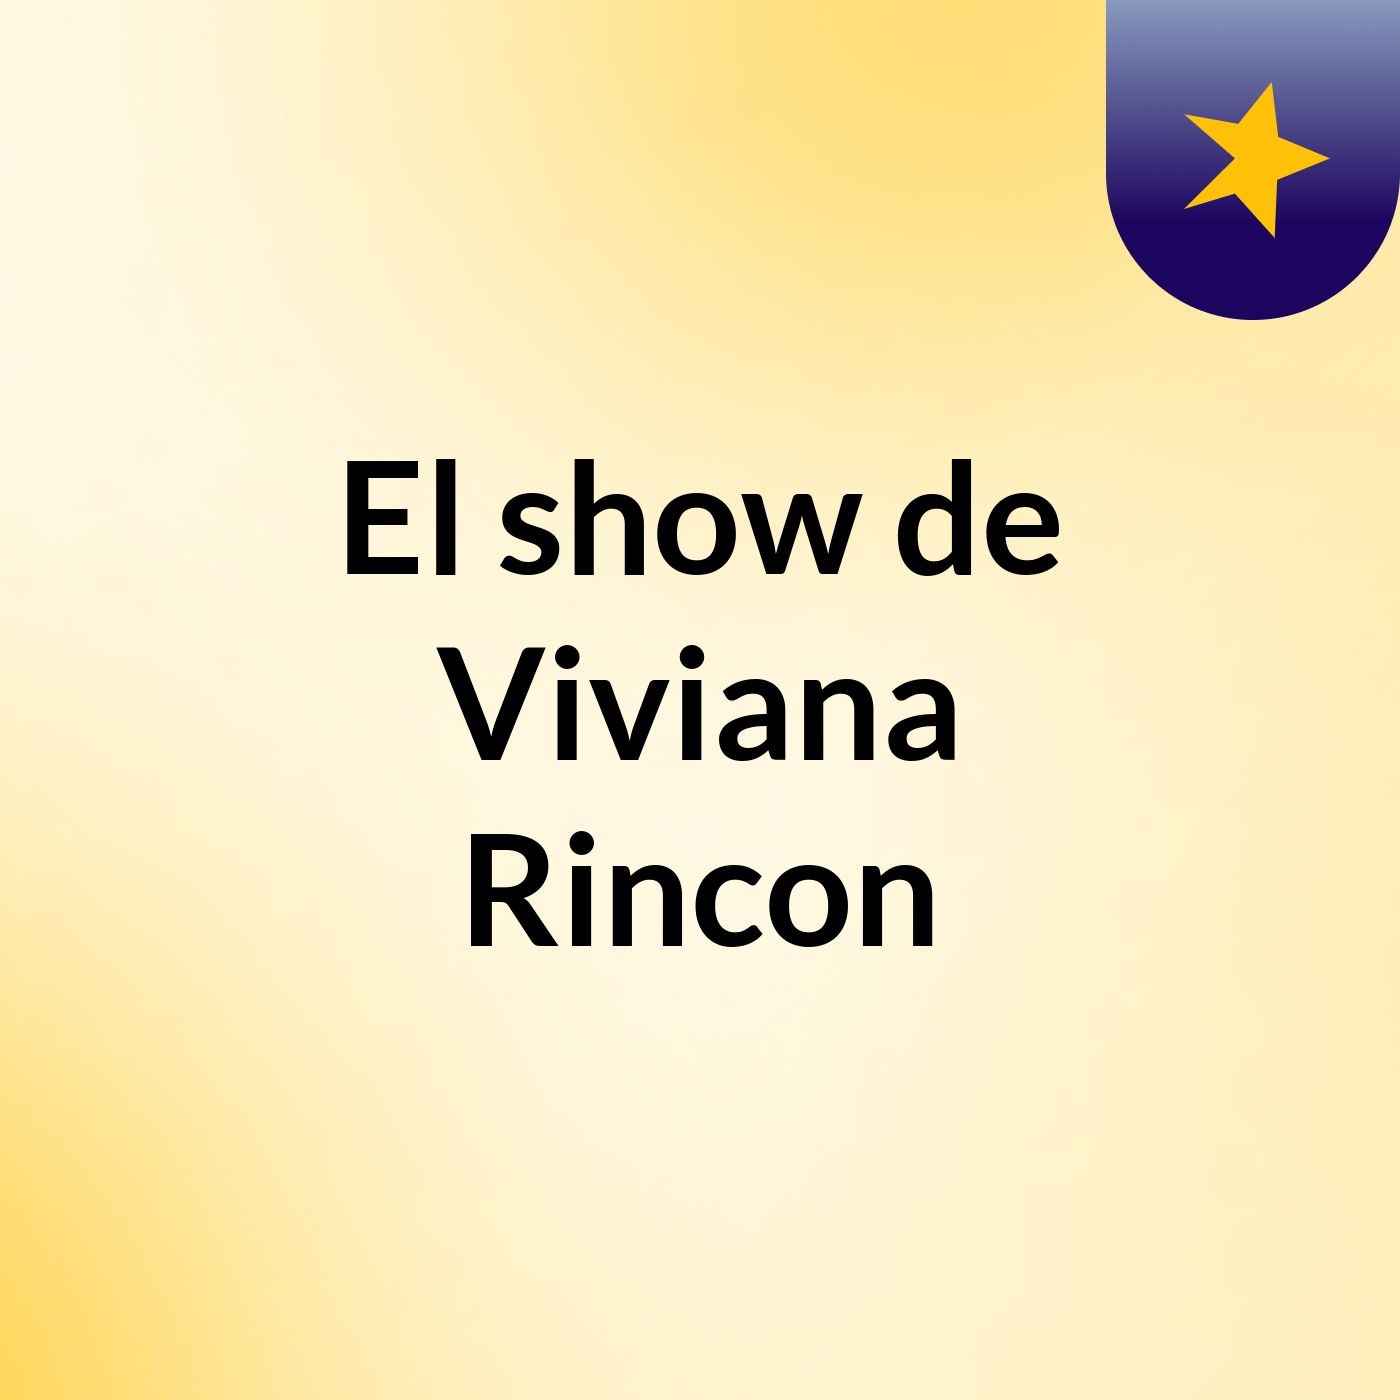 El show de Viviana Rincon